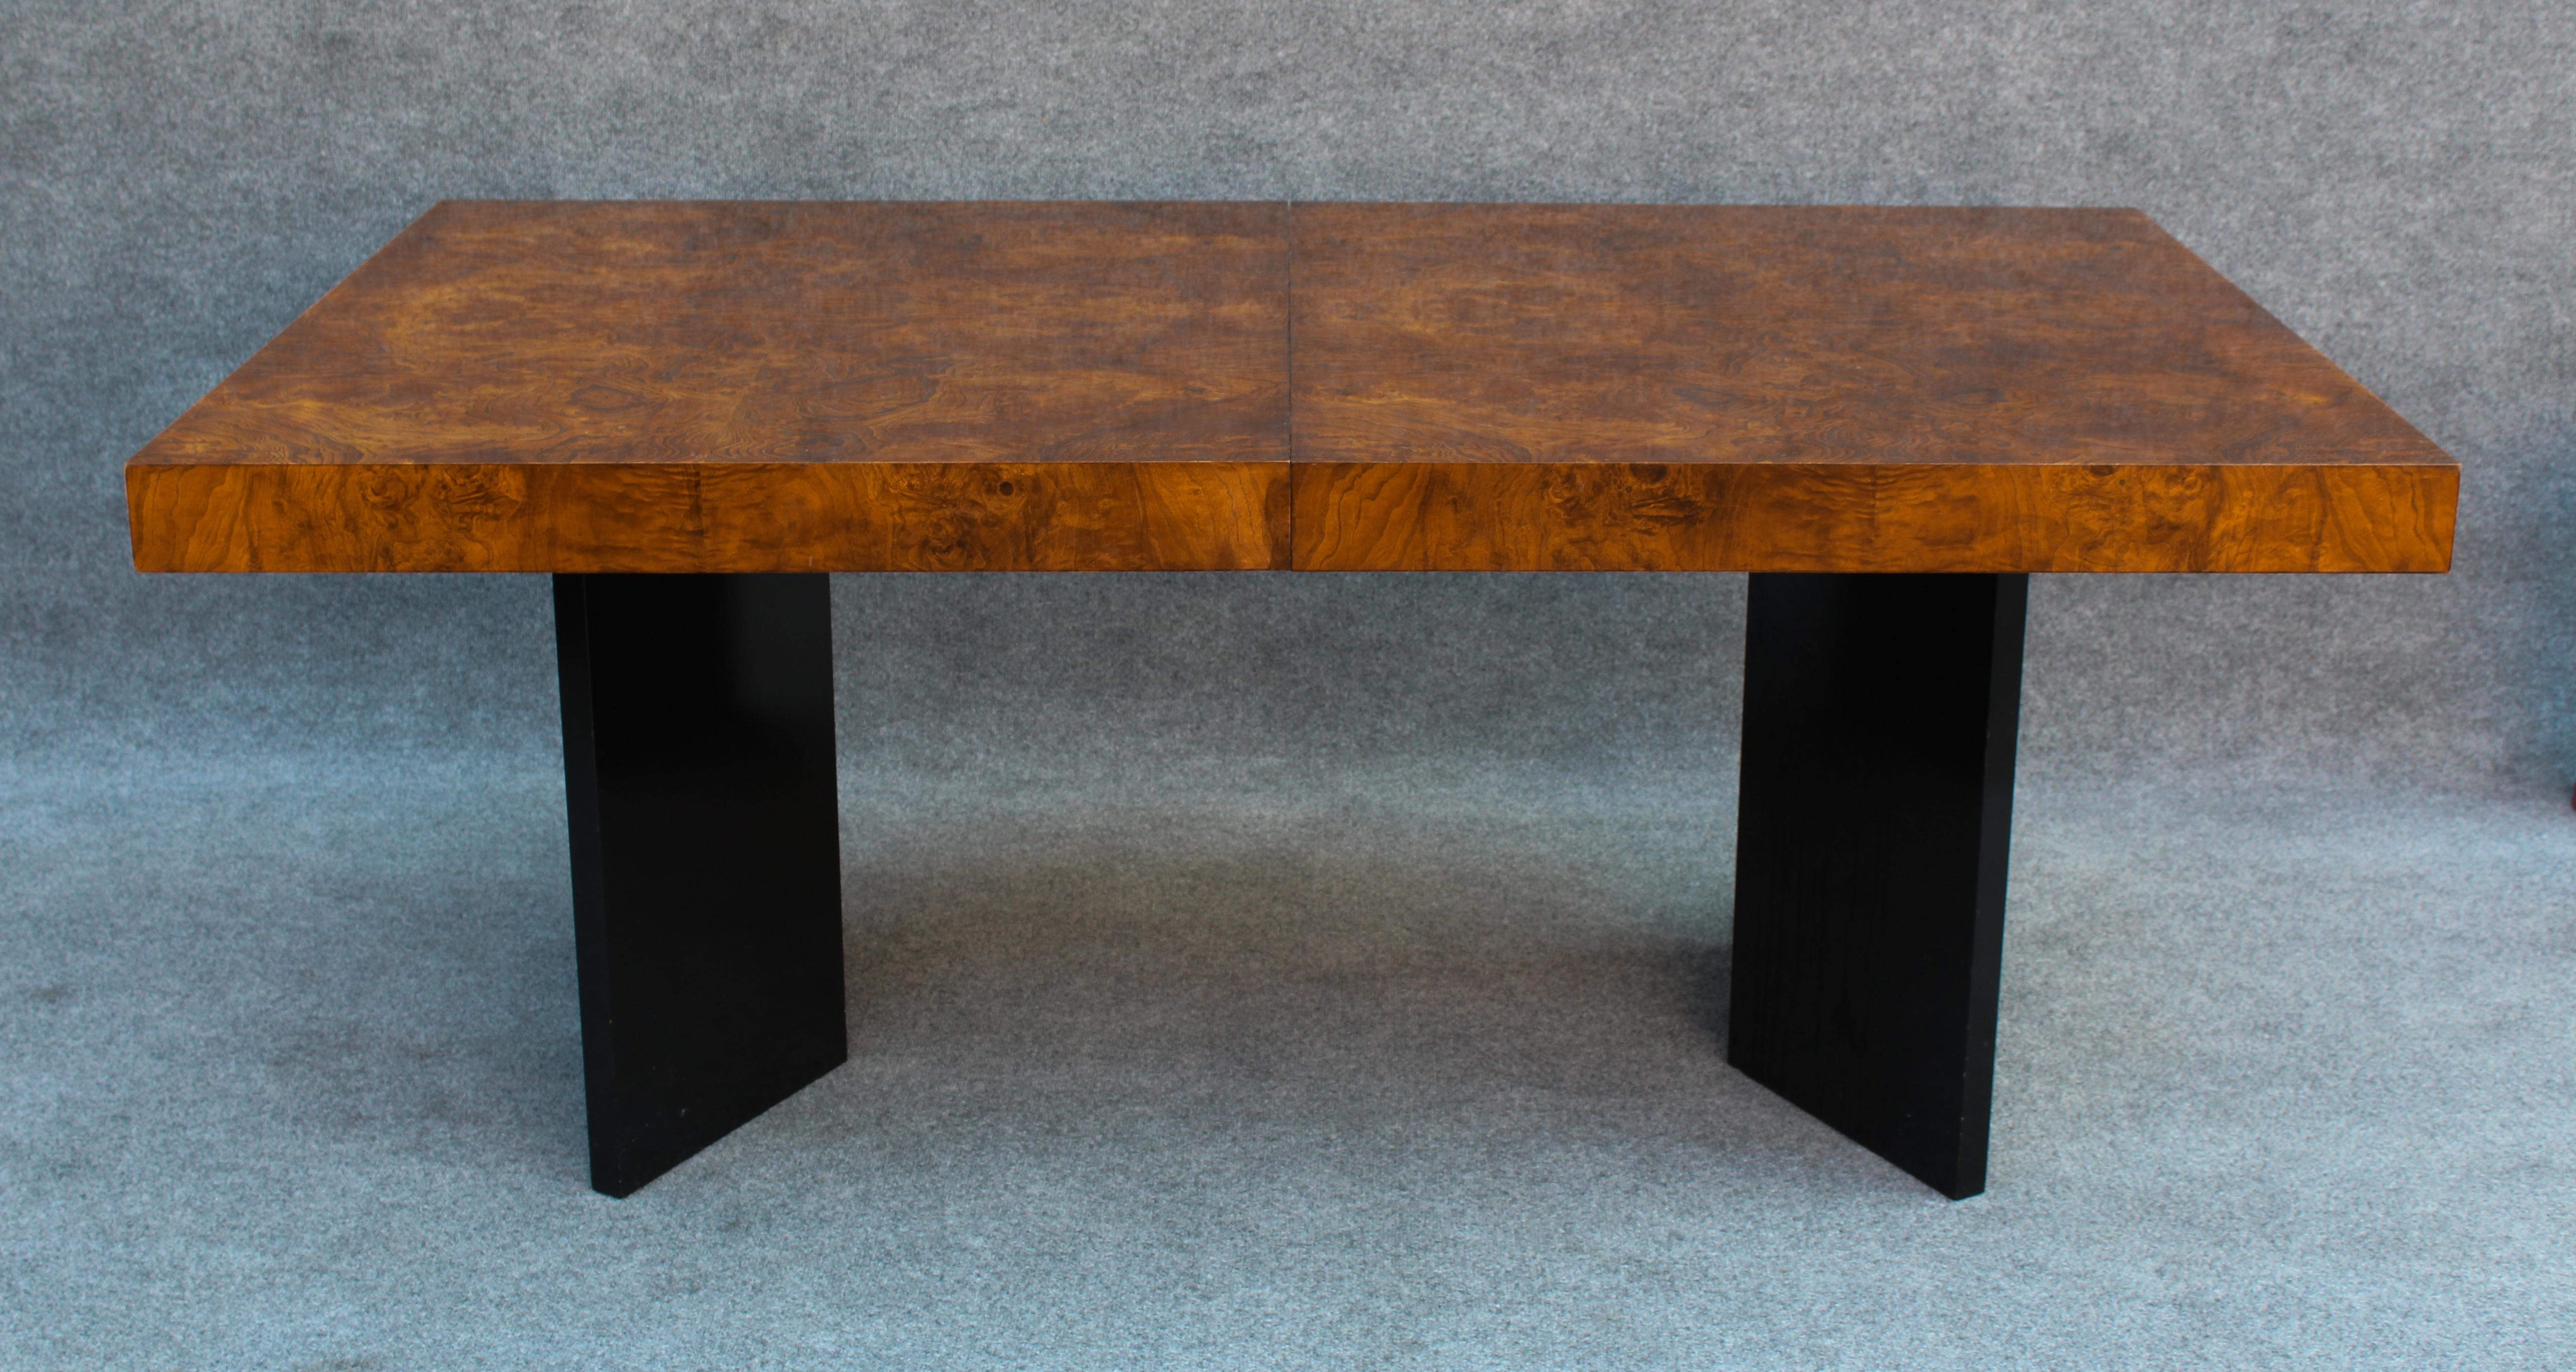 Cette fantastique table de salle à manger est attribuée à la légende du design américain Milo Baughman, et a probablement été construite entre la fin des années 1970 et le début des années 1980. Bien que l'ensemble de la table soit magnifique, la